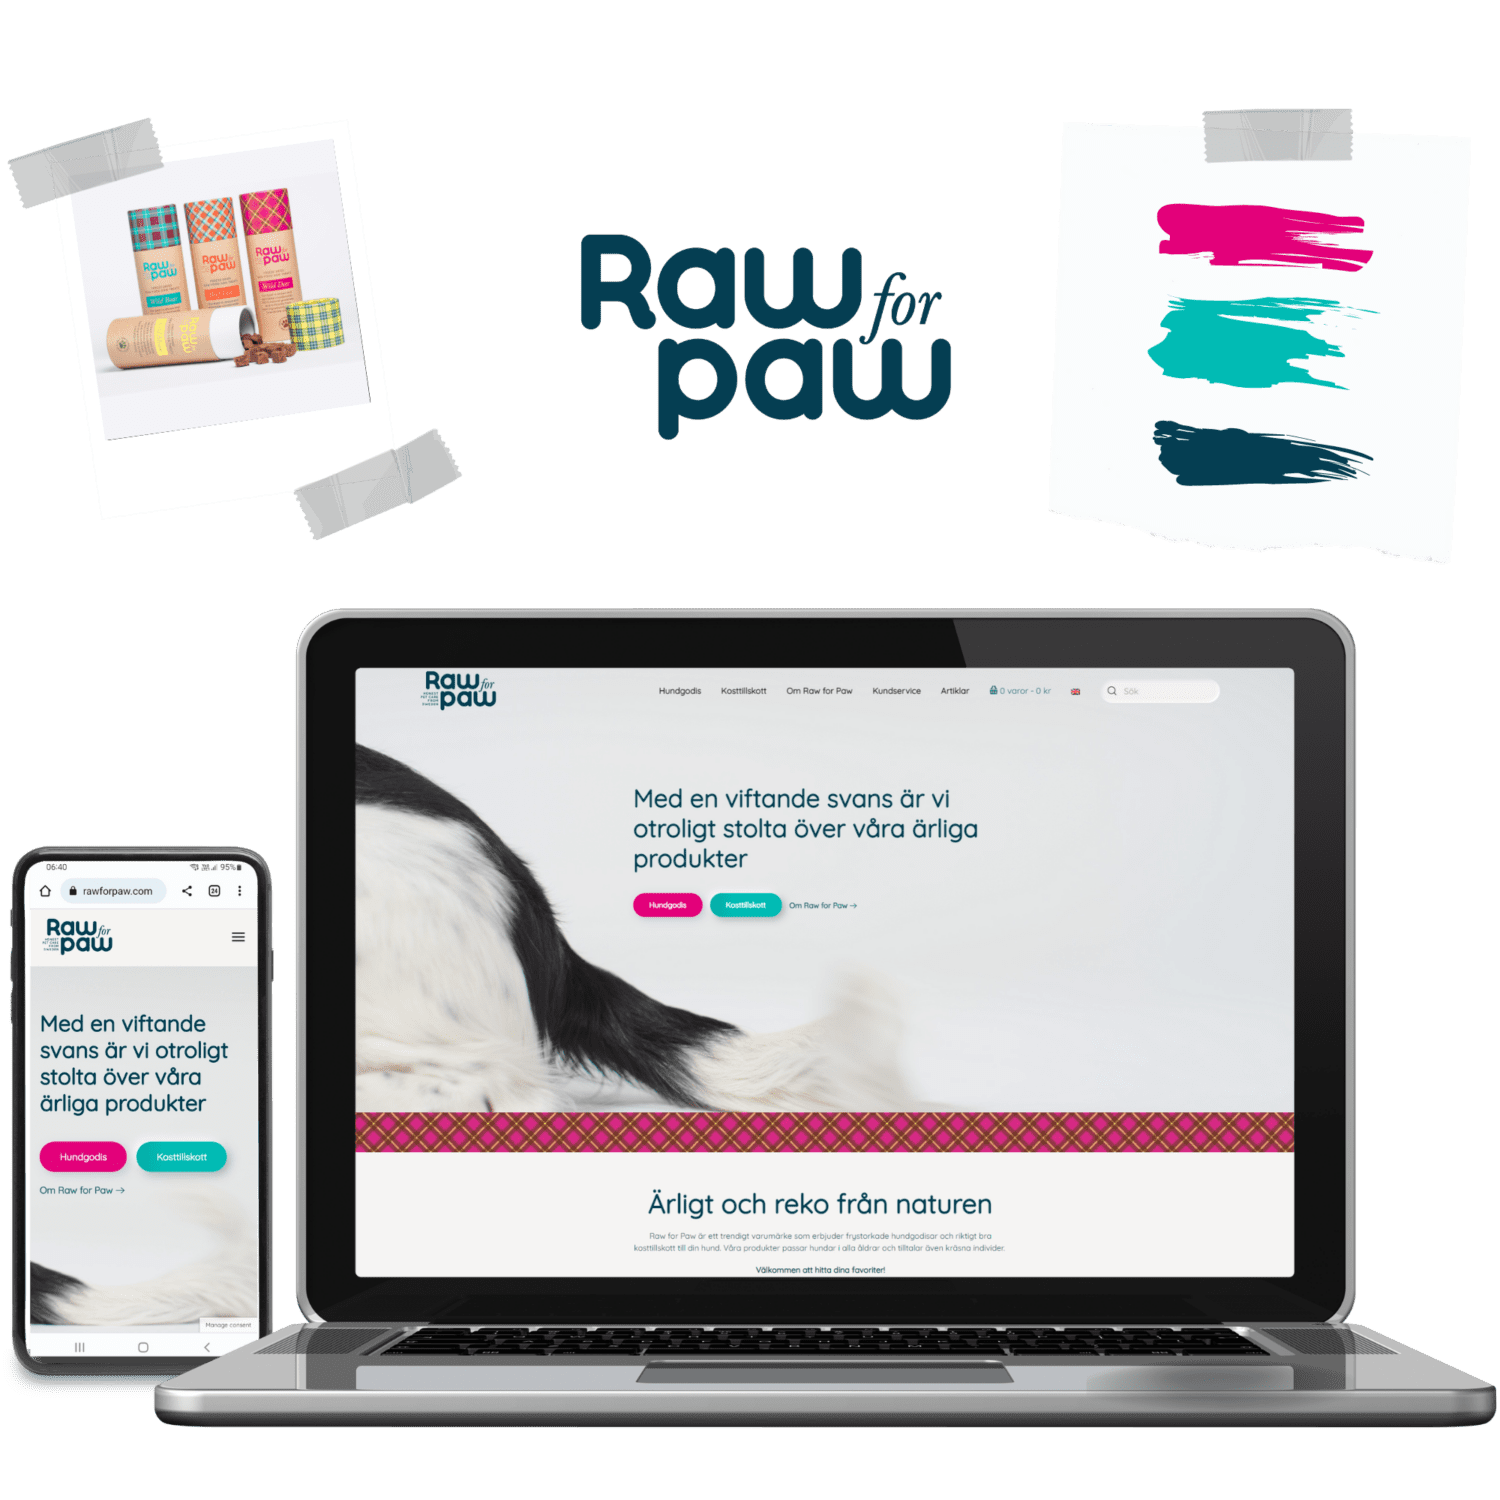 Laptop och mobiltelefon med Raw for Paws webbsida, ett foto på produkterna samt färgförslag och deras loga